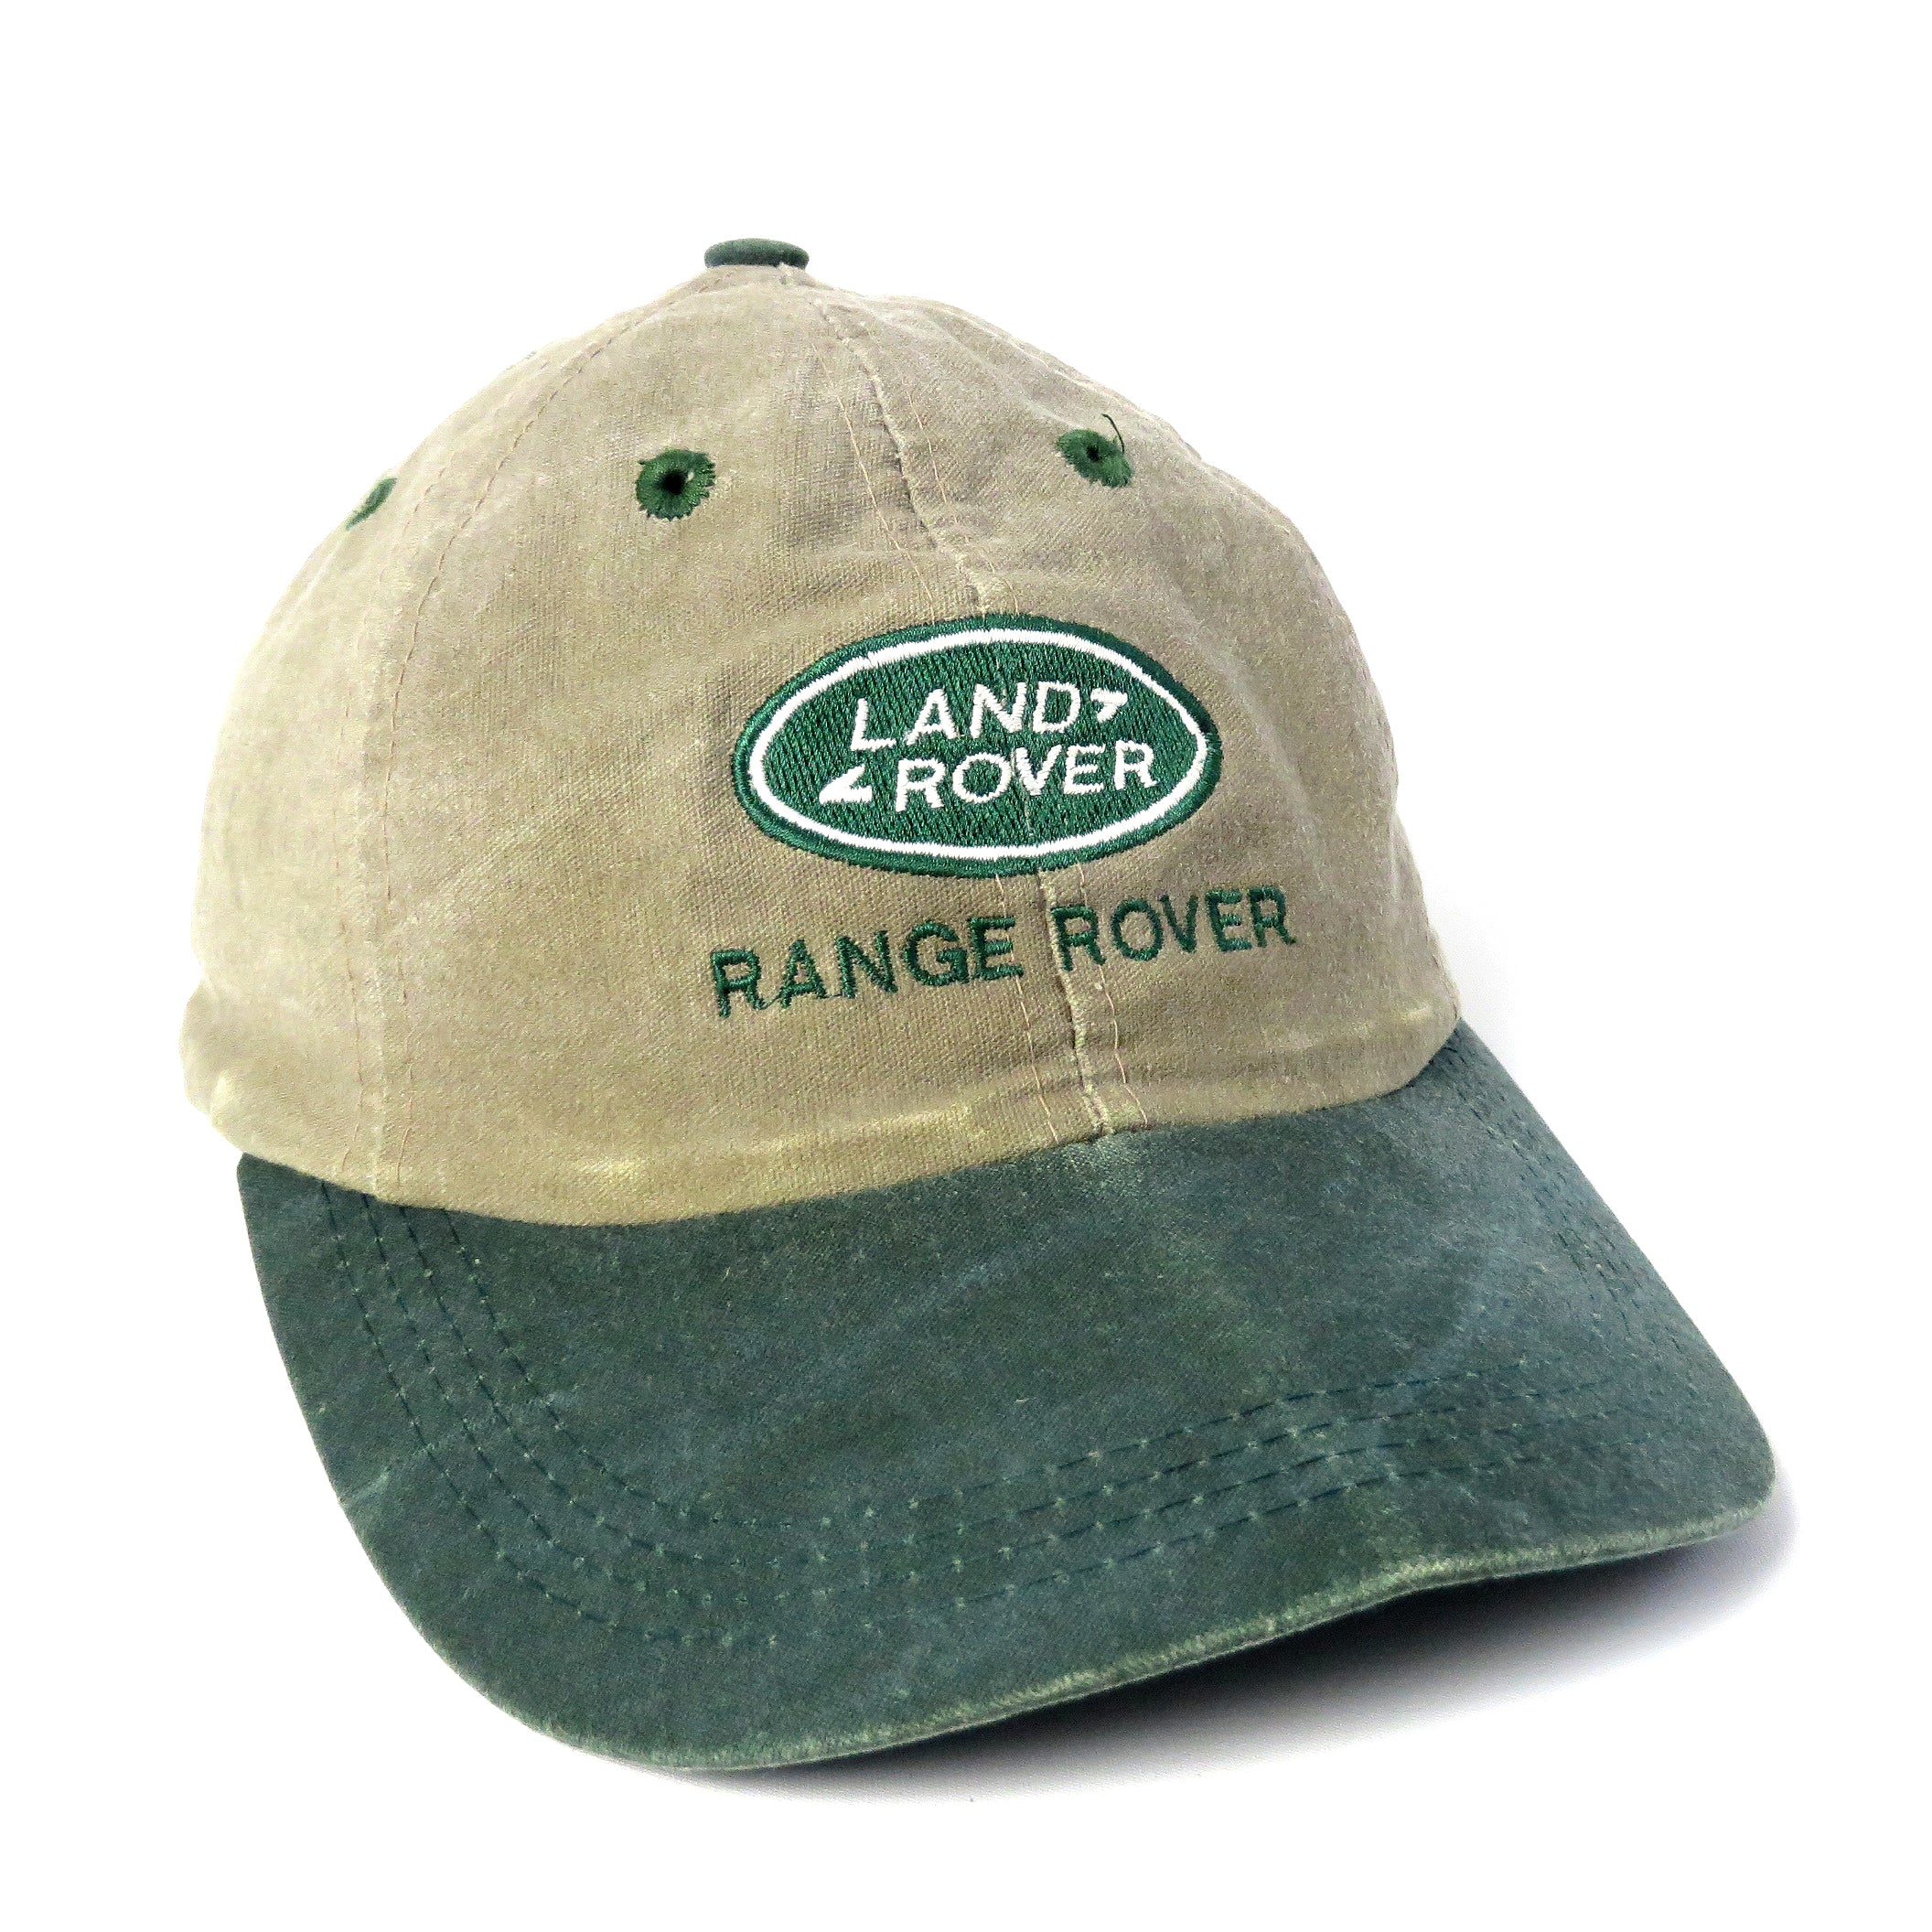 Vintage Range Rover Strapback Hat